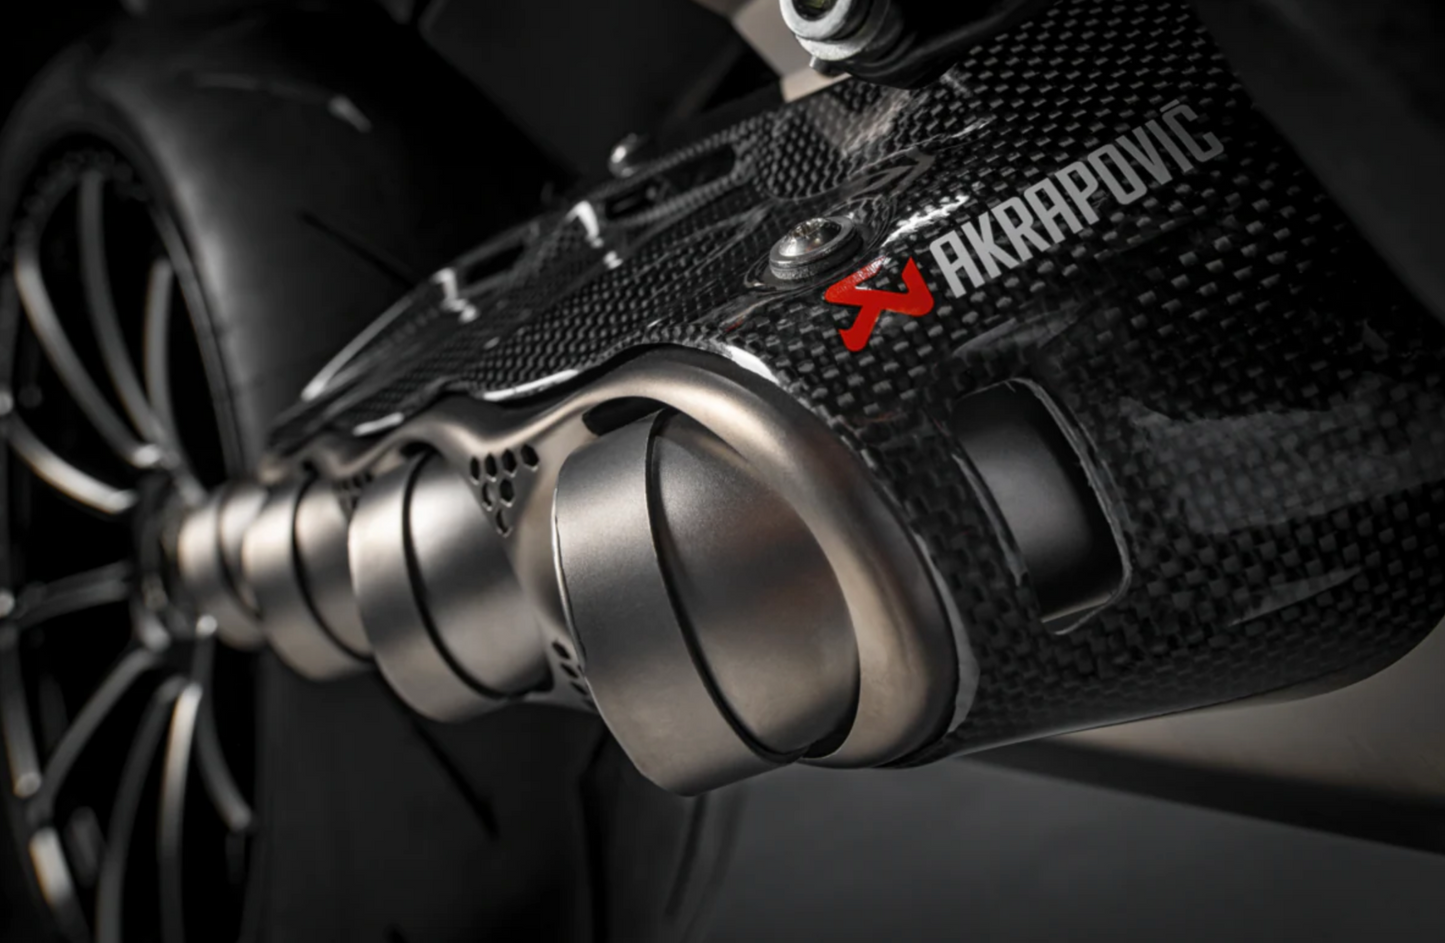 1/29 Italy in stock DUCATI Diavel V4 Racing Exhaust Silencer Ducati Diavel V4 Akrapovic 96482171AA 96482172AA